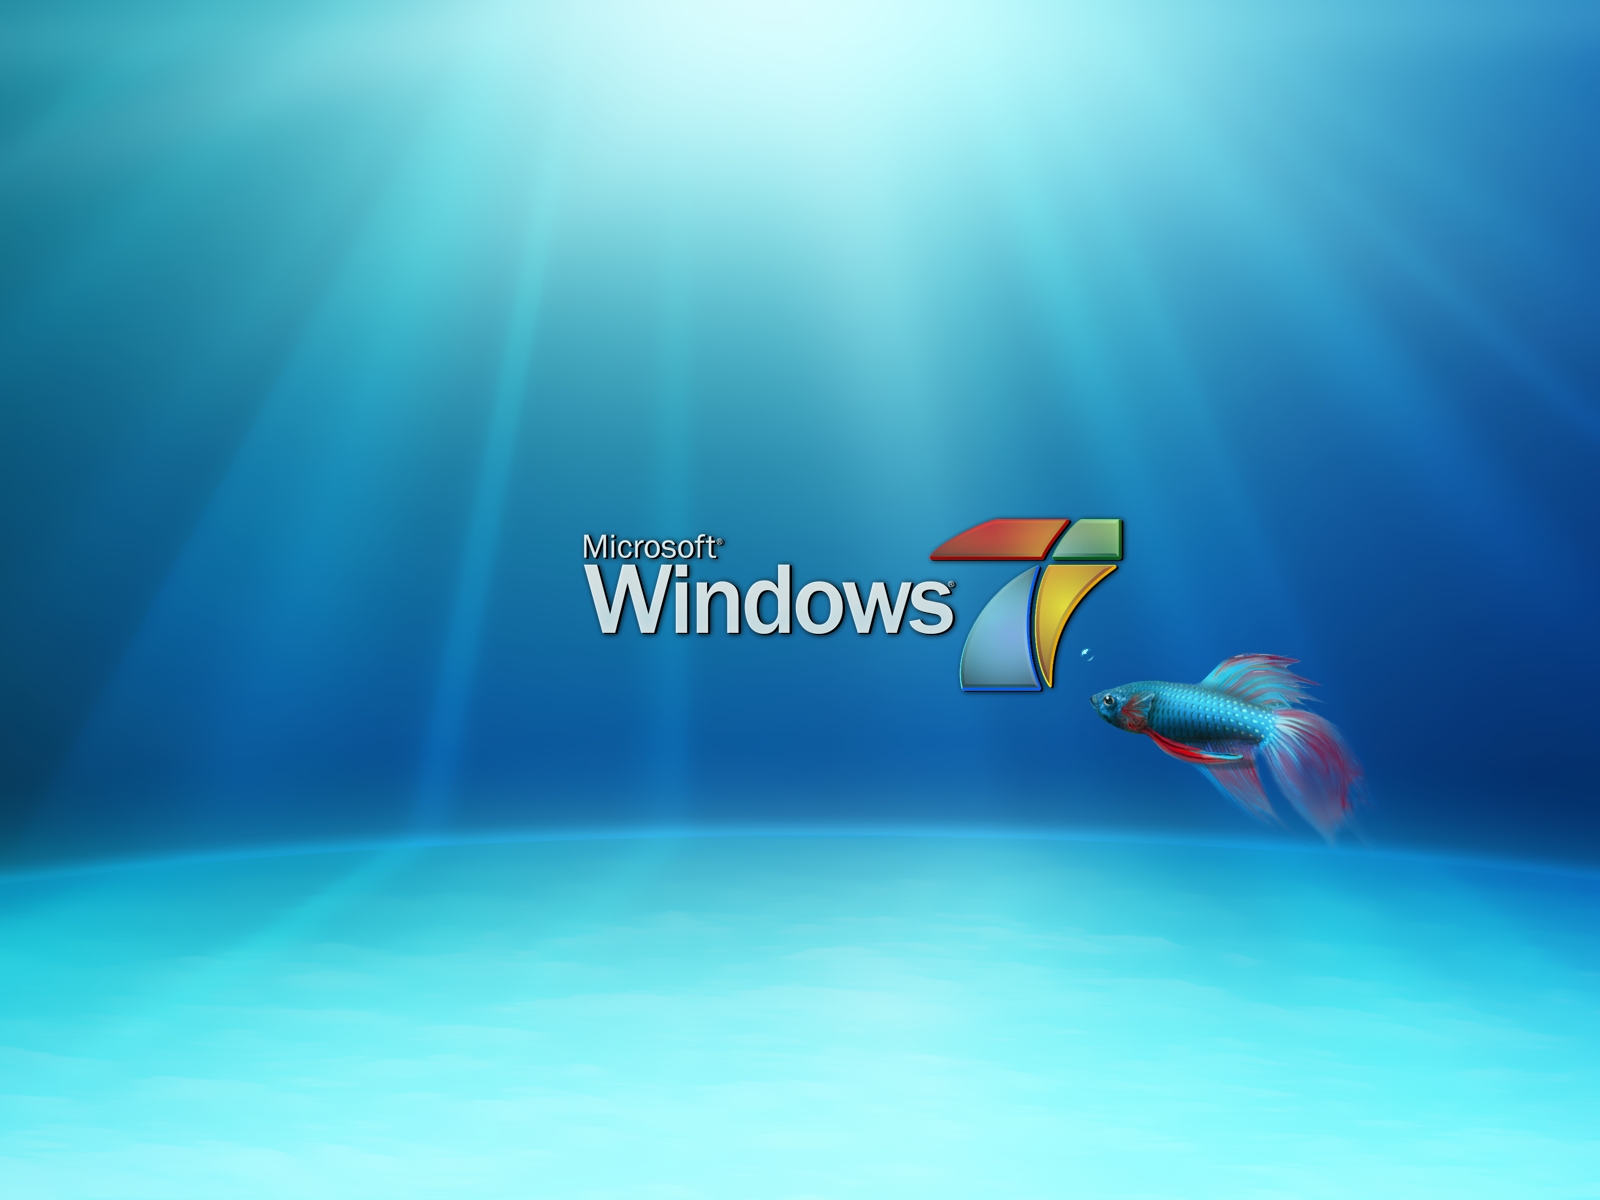 window 7 HD Wallpaper: HD Wallpapers of Windows 7 2